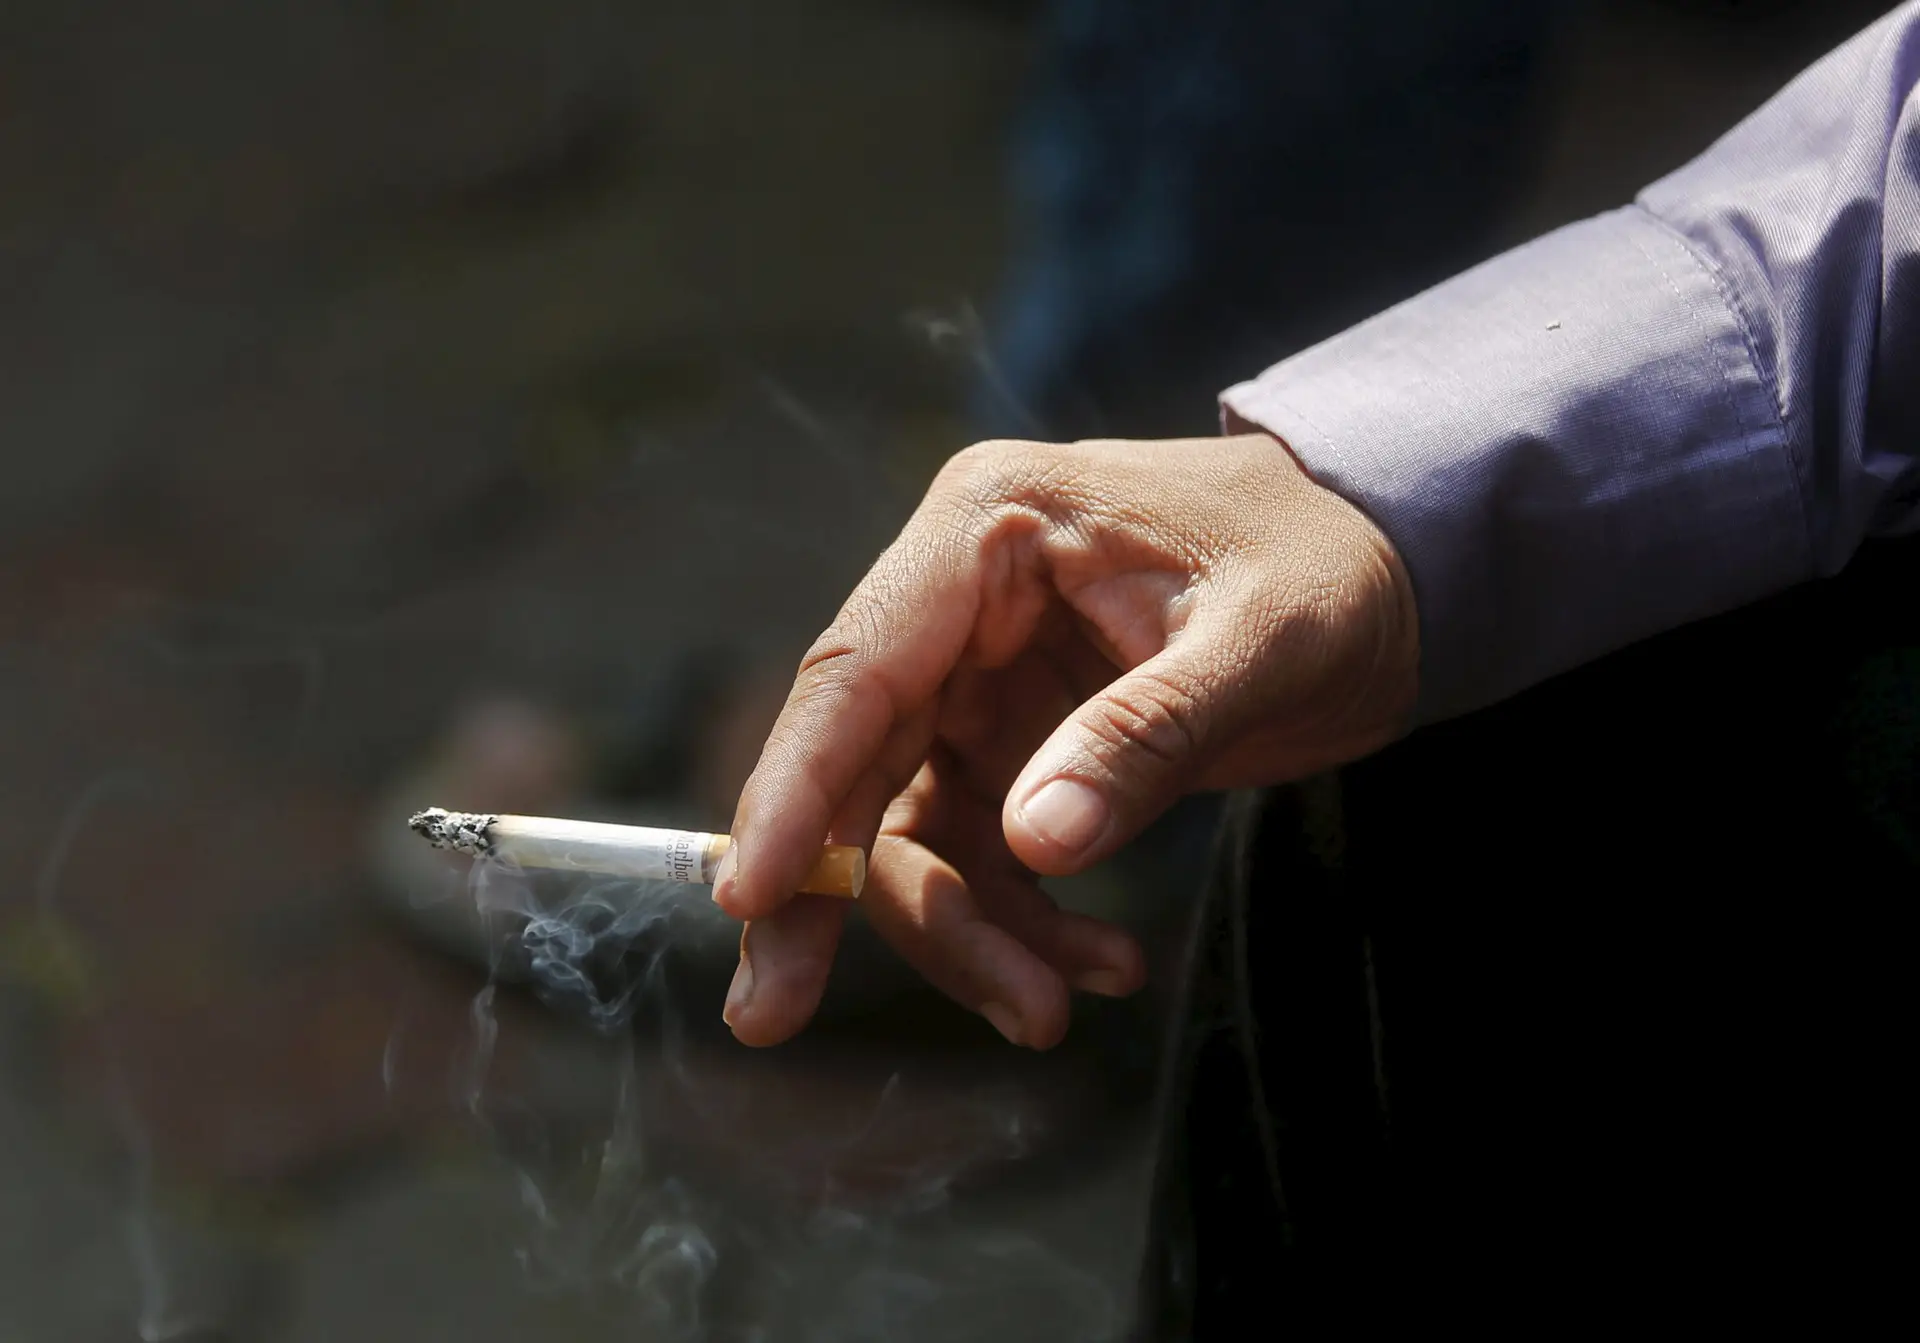 Proibir venda de tabaco nos postos de abastecimento é uma medida "desigual e discriminatória", dizem revendedores de combustíveis